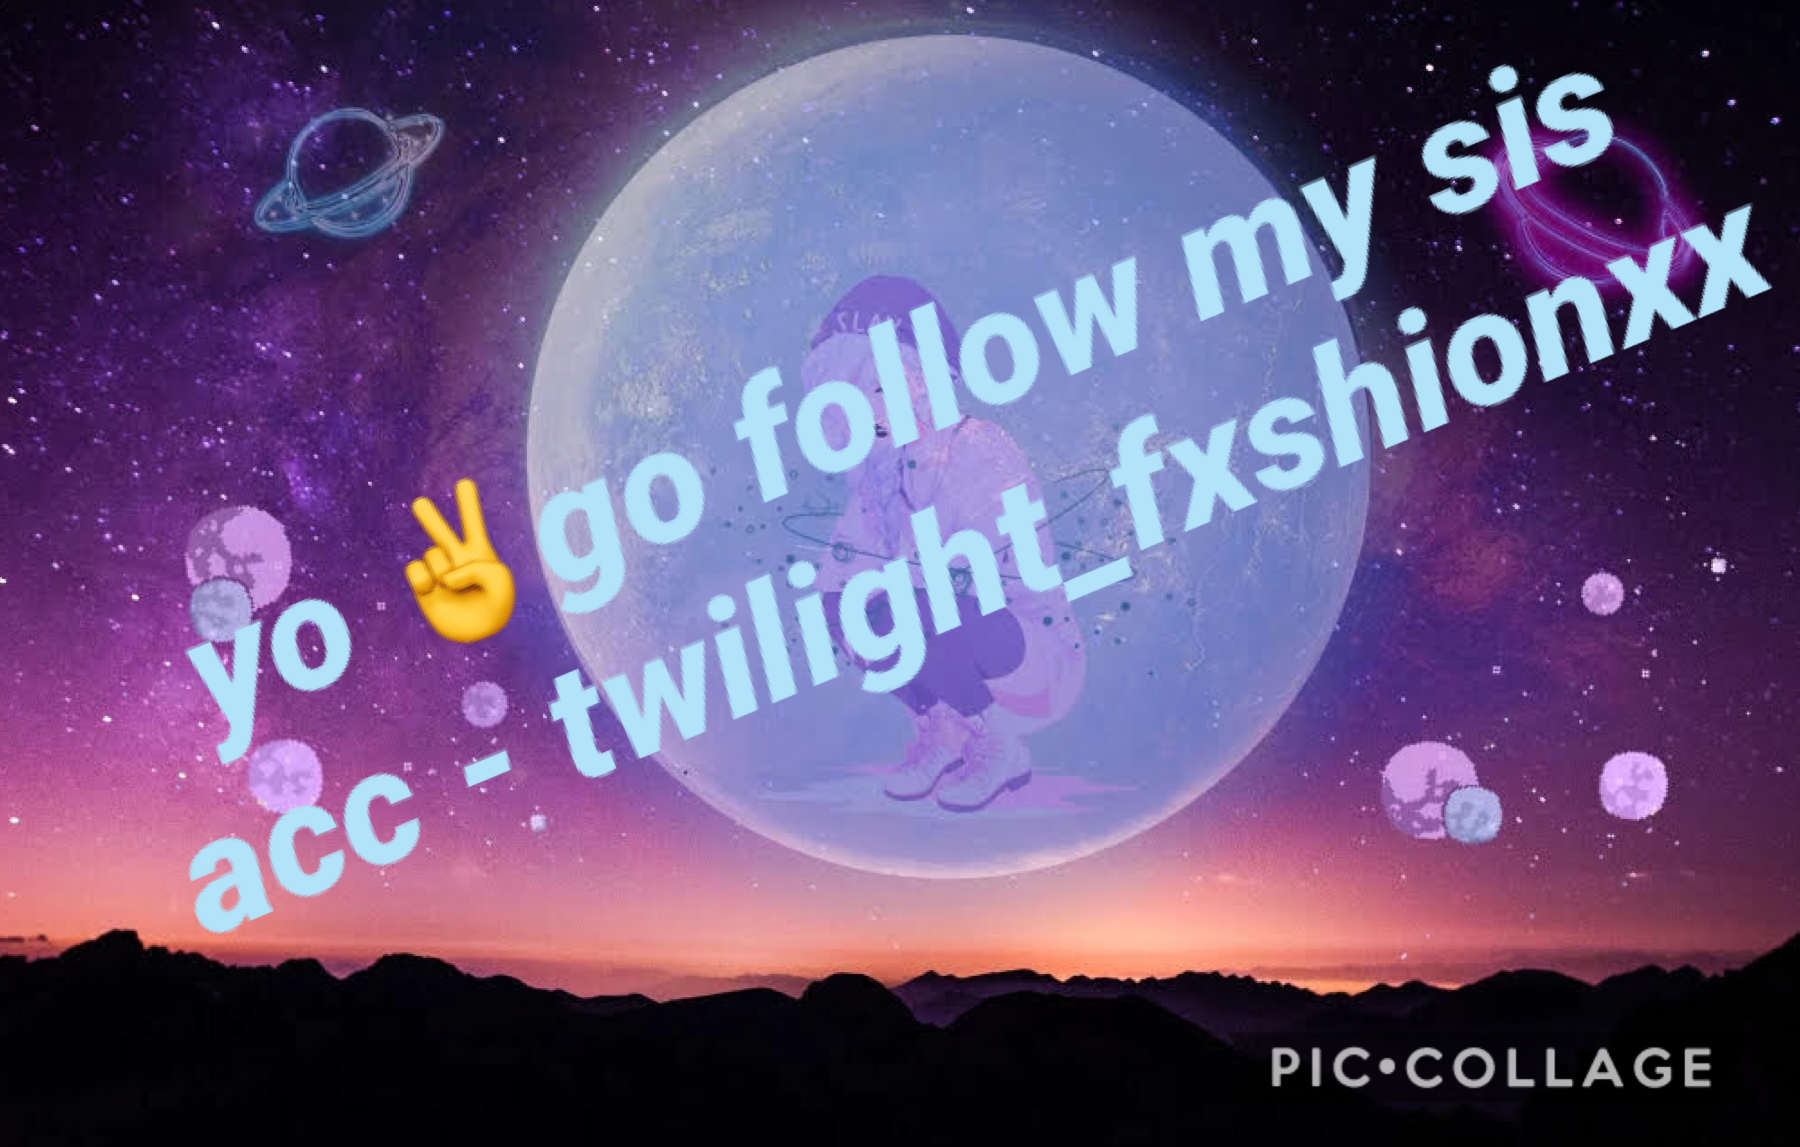 twilight_fxshionxx 💕💕go follow herrrrrrr ✌️✨🦋💖